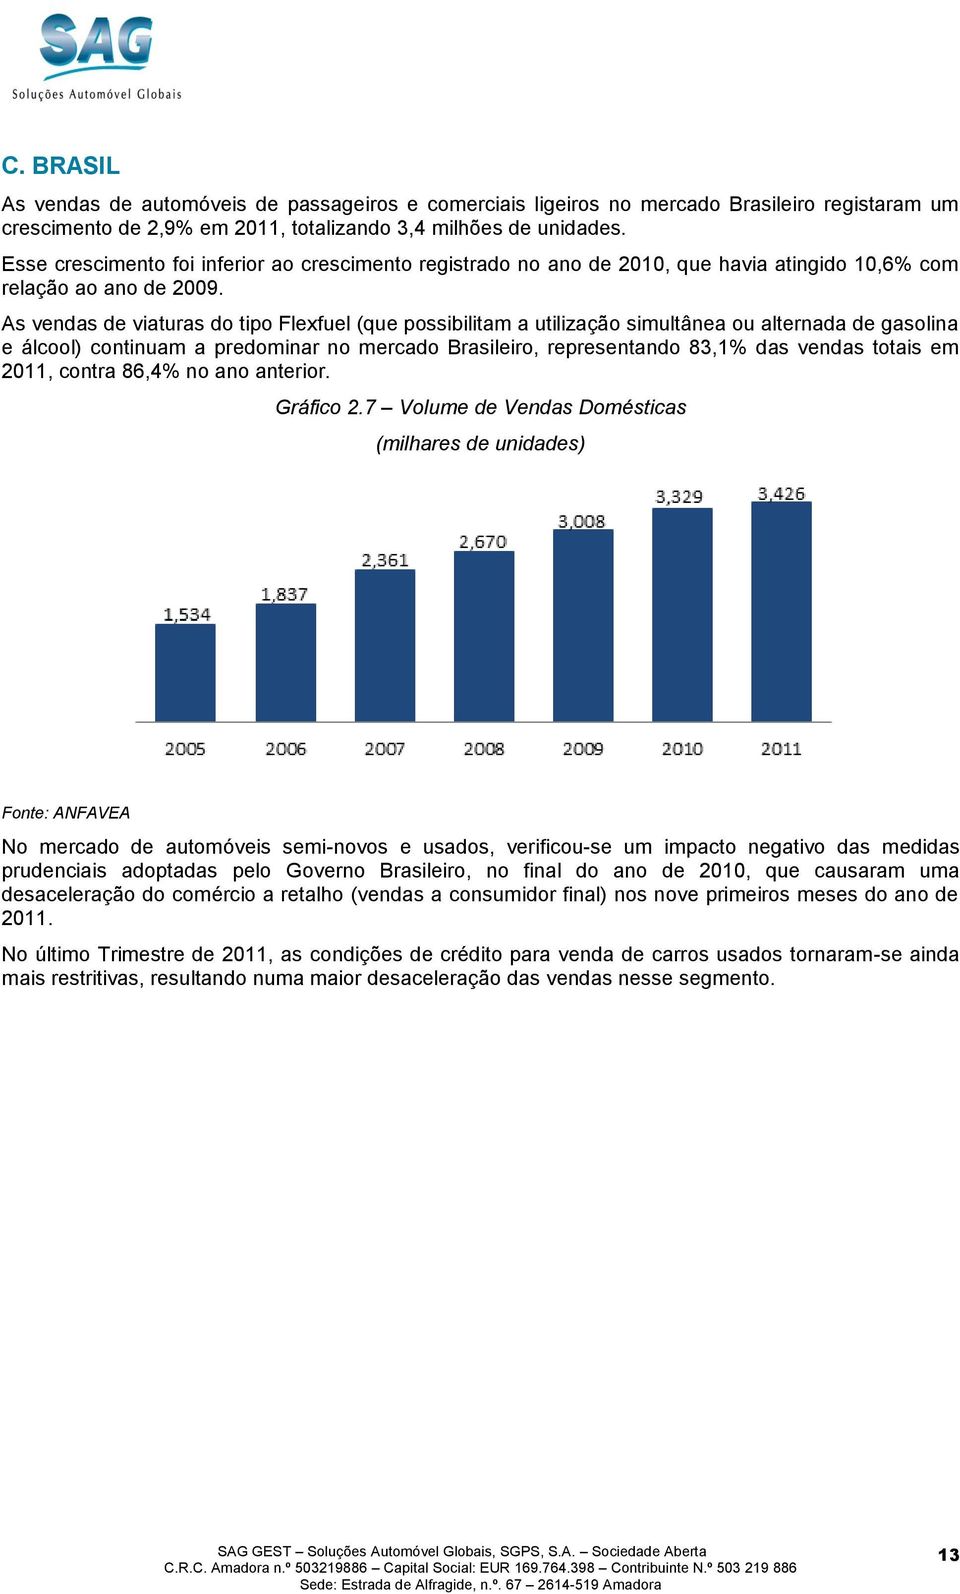 As vendas de viaturas do tipo Flexfuel (que possibilitam a utilização simultânea ou alternada de gasolina e álcool) continuam a predominar no mercado Brasileiro, representando 83,1% das vendas totais